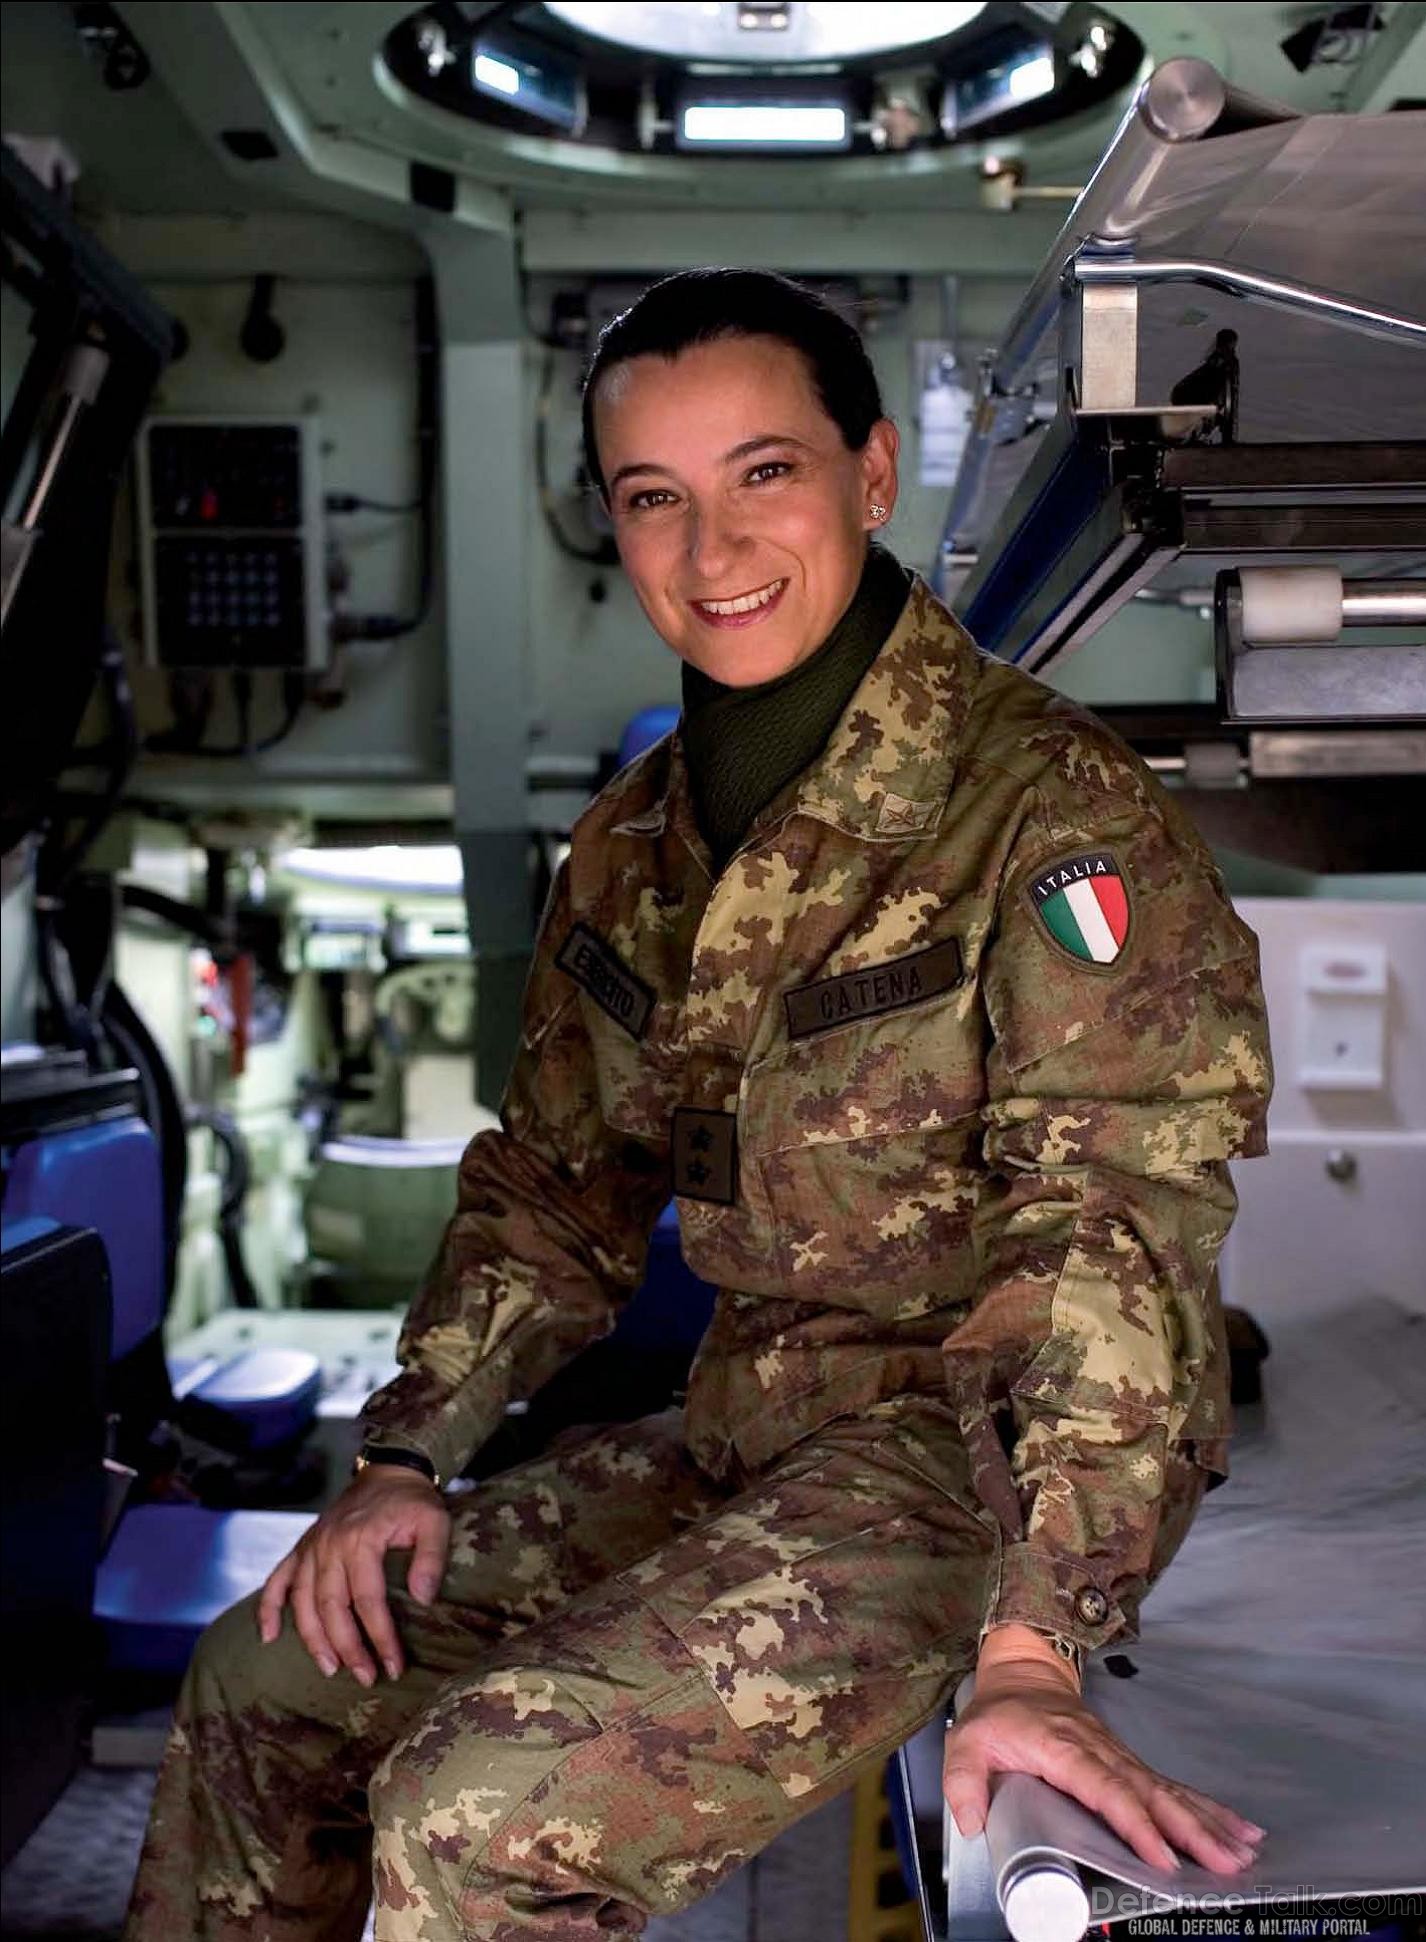 Italian Army